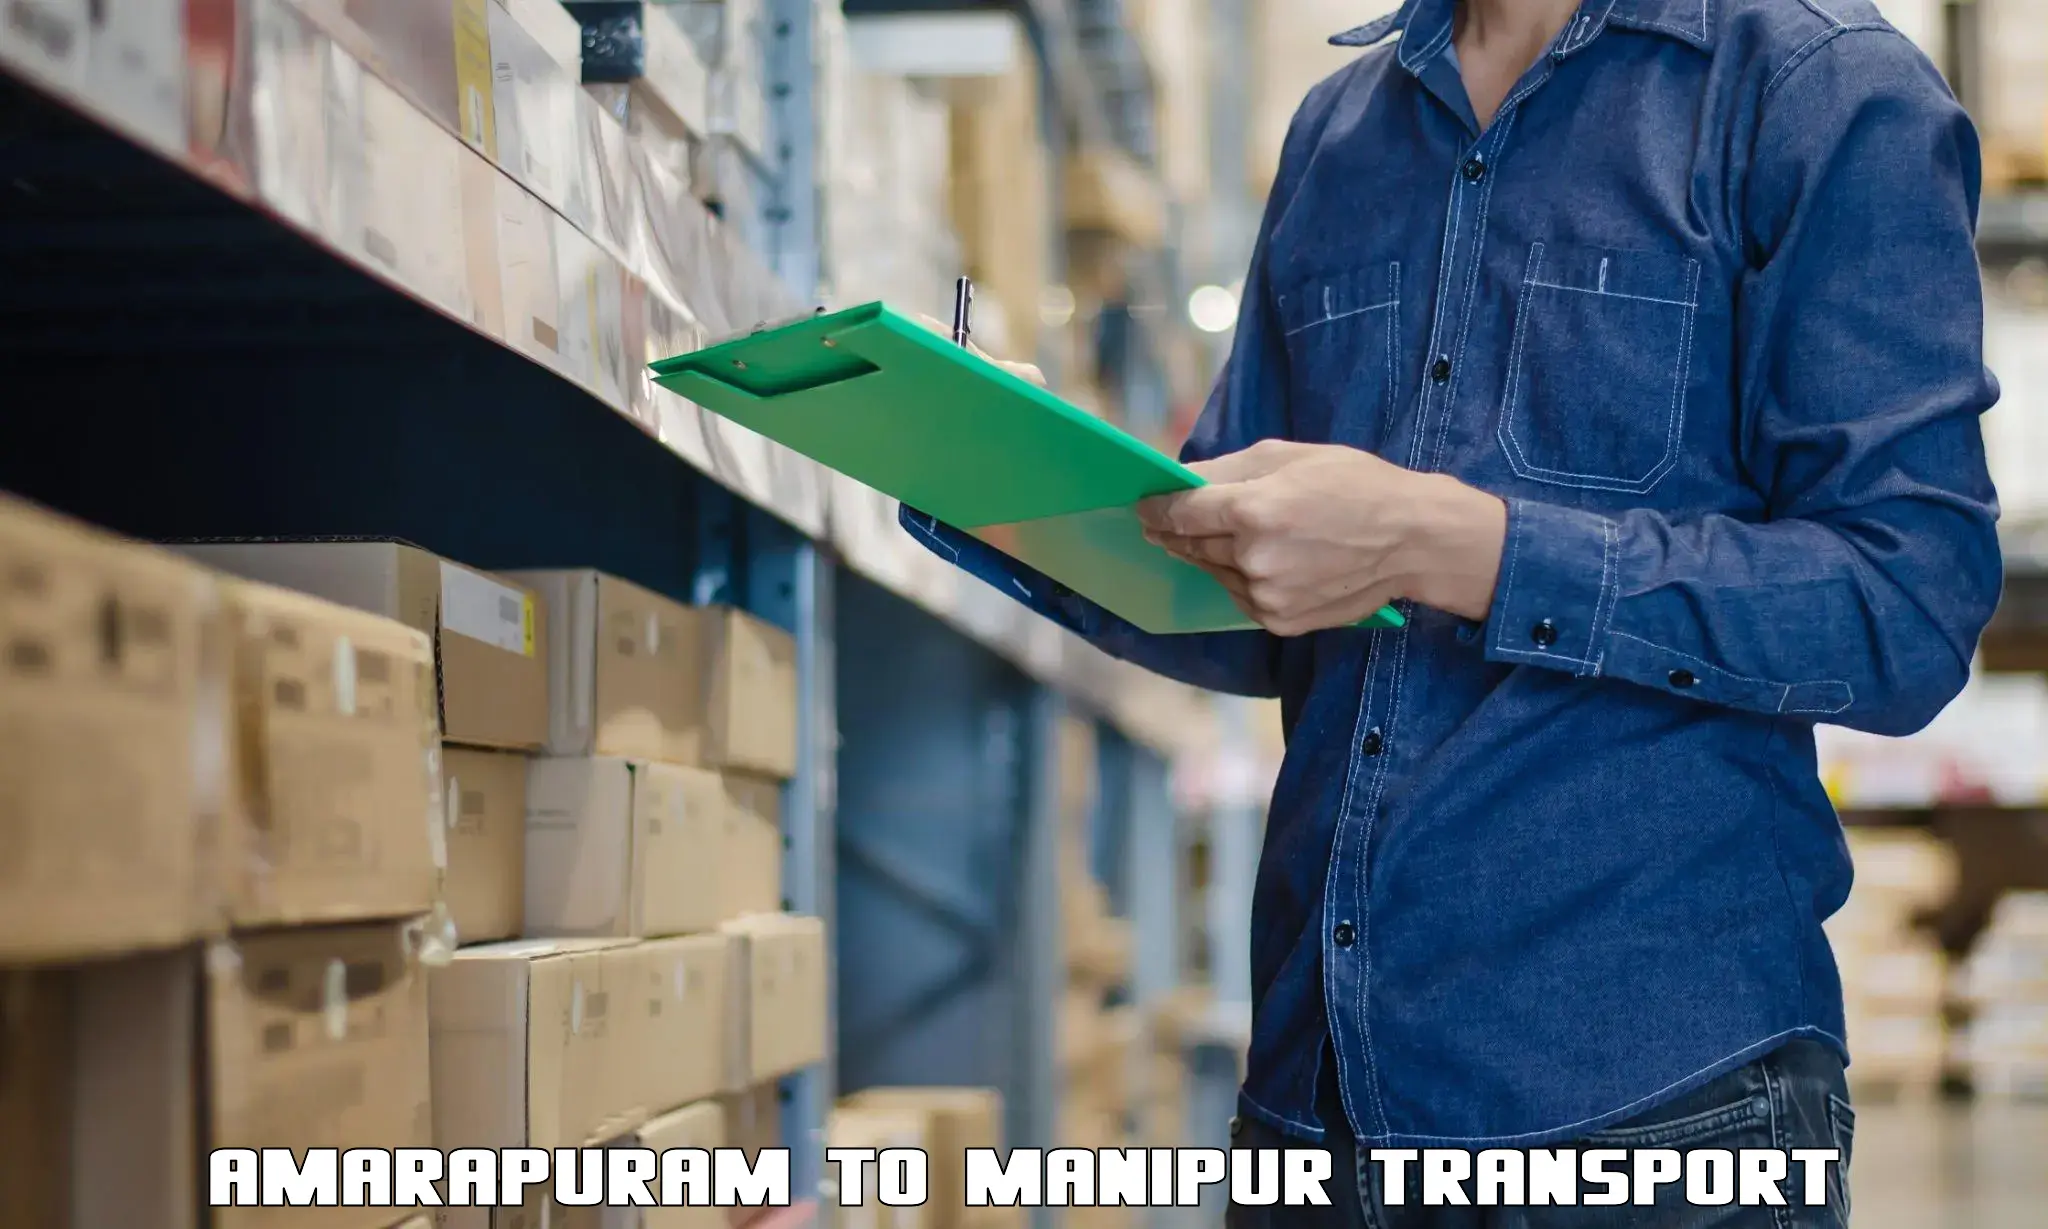 Interstate transport services Amarapuram to NIT Manipur